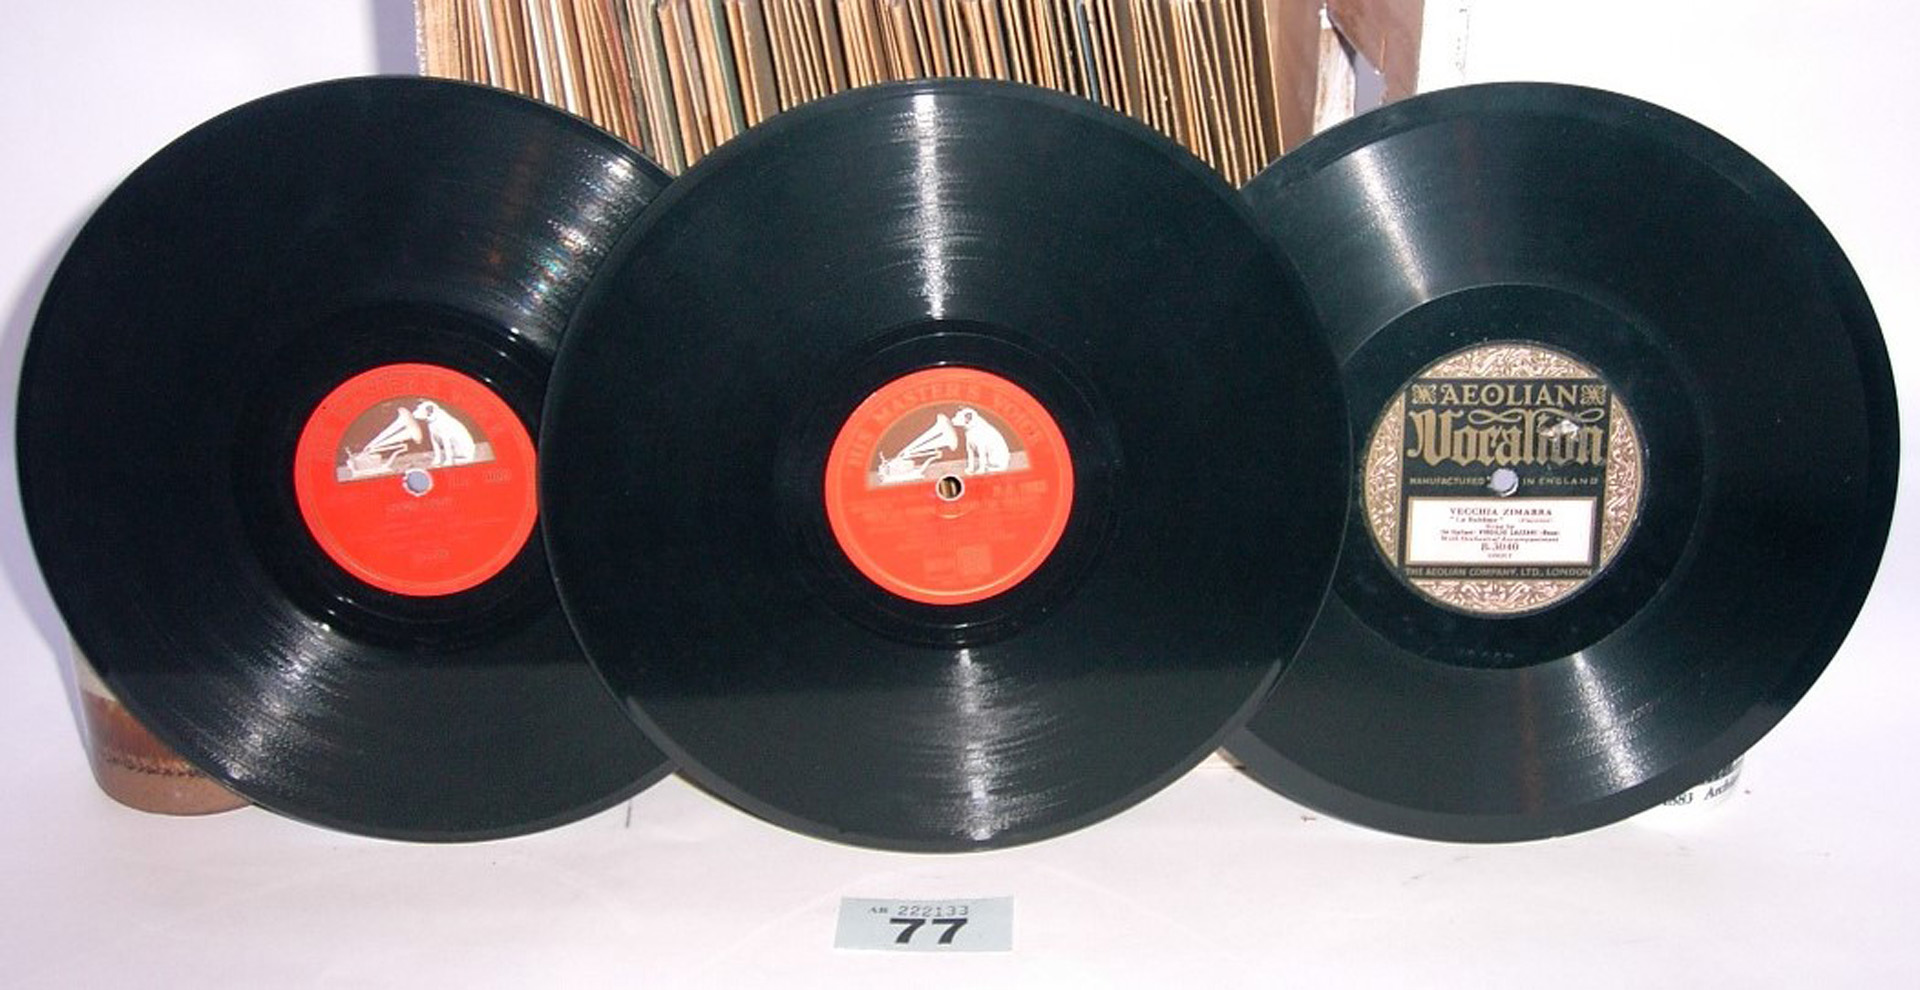 Twenty-three 10-inch vocal records, by Mario Lanza (22), Lazzari, (23)